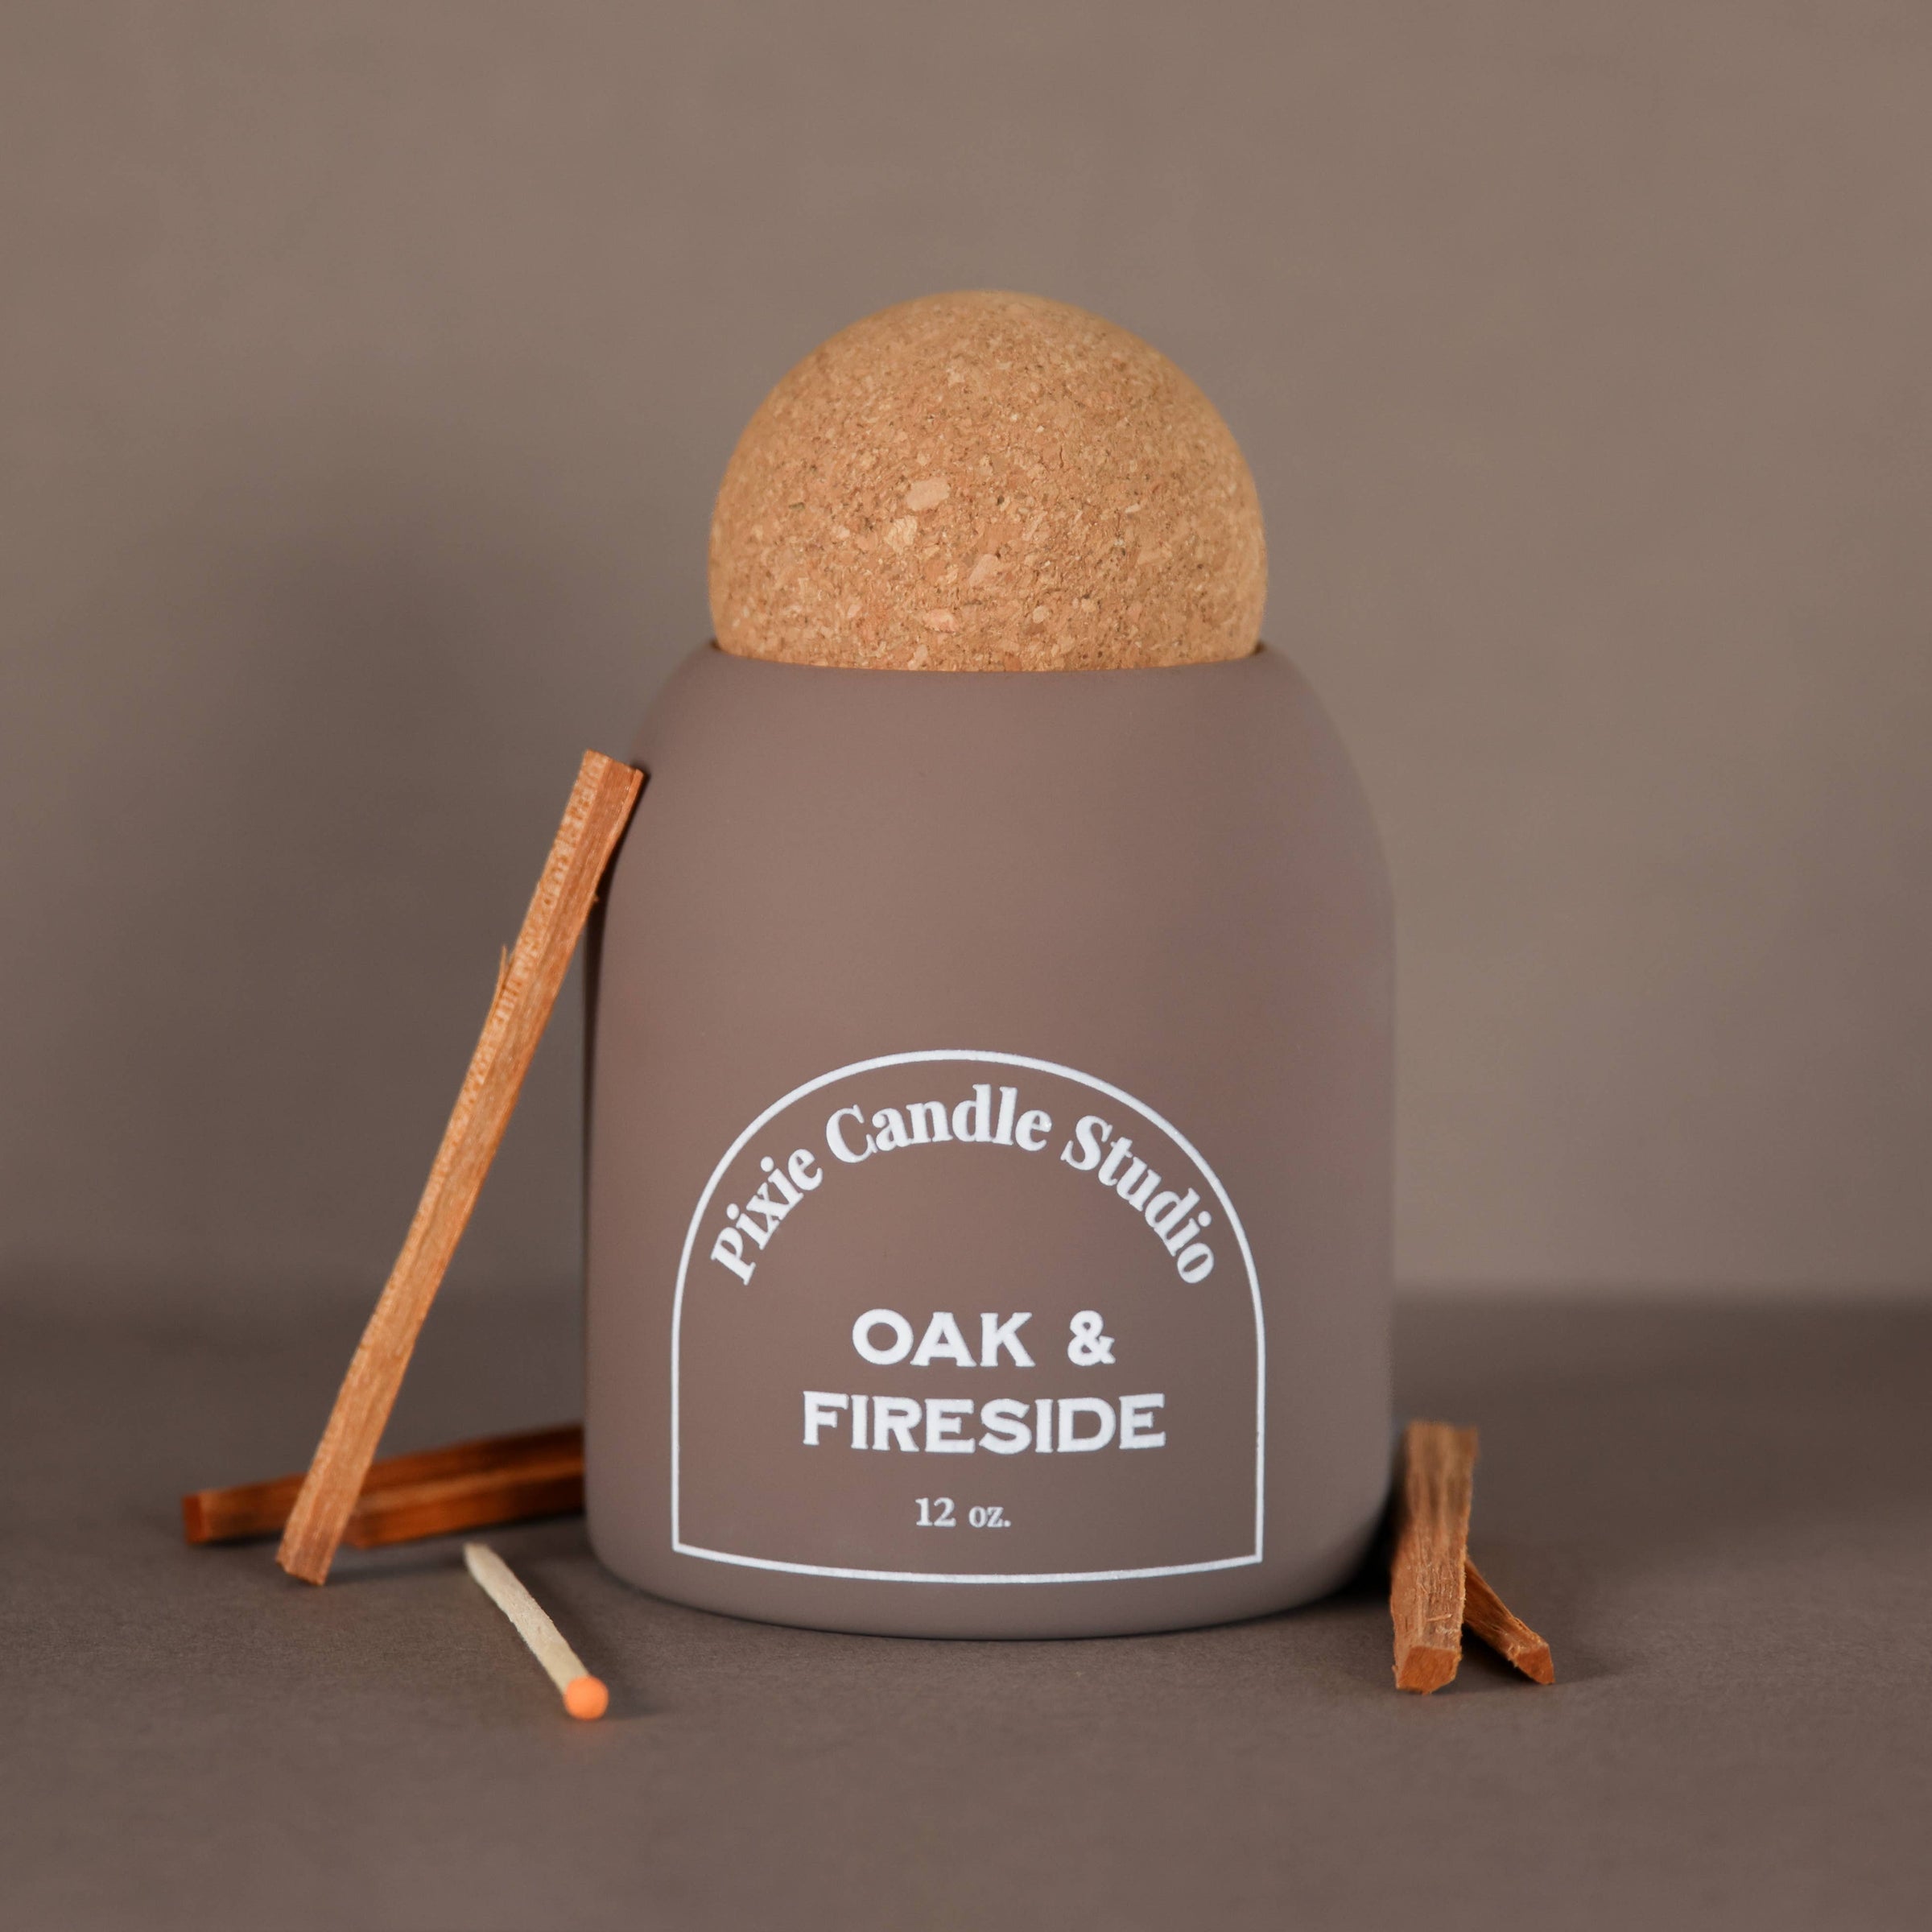 Oak & Fireside Candle